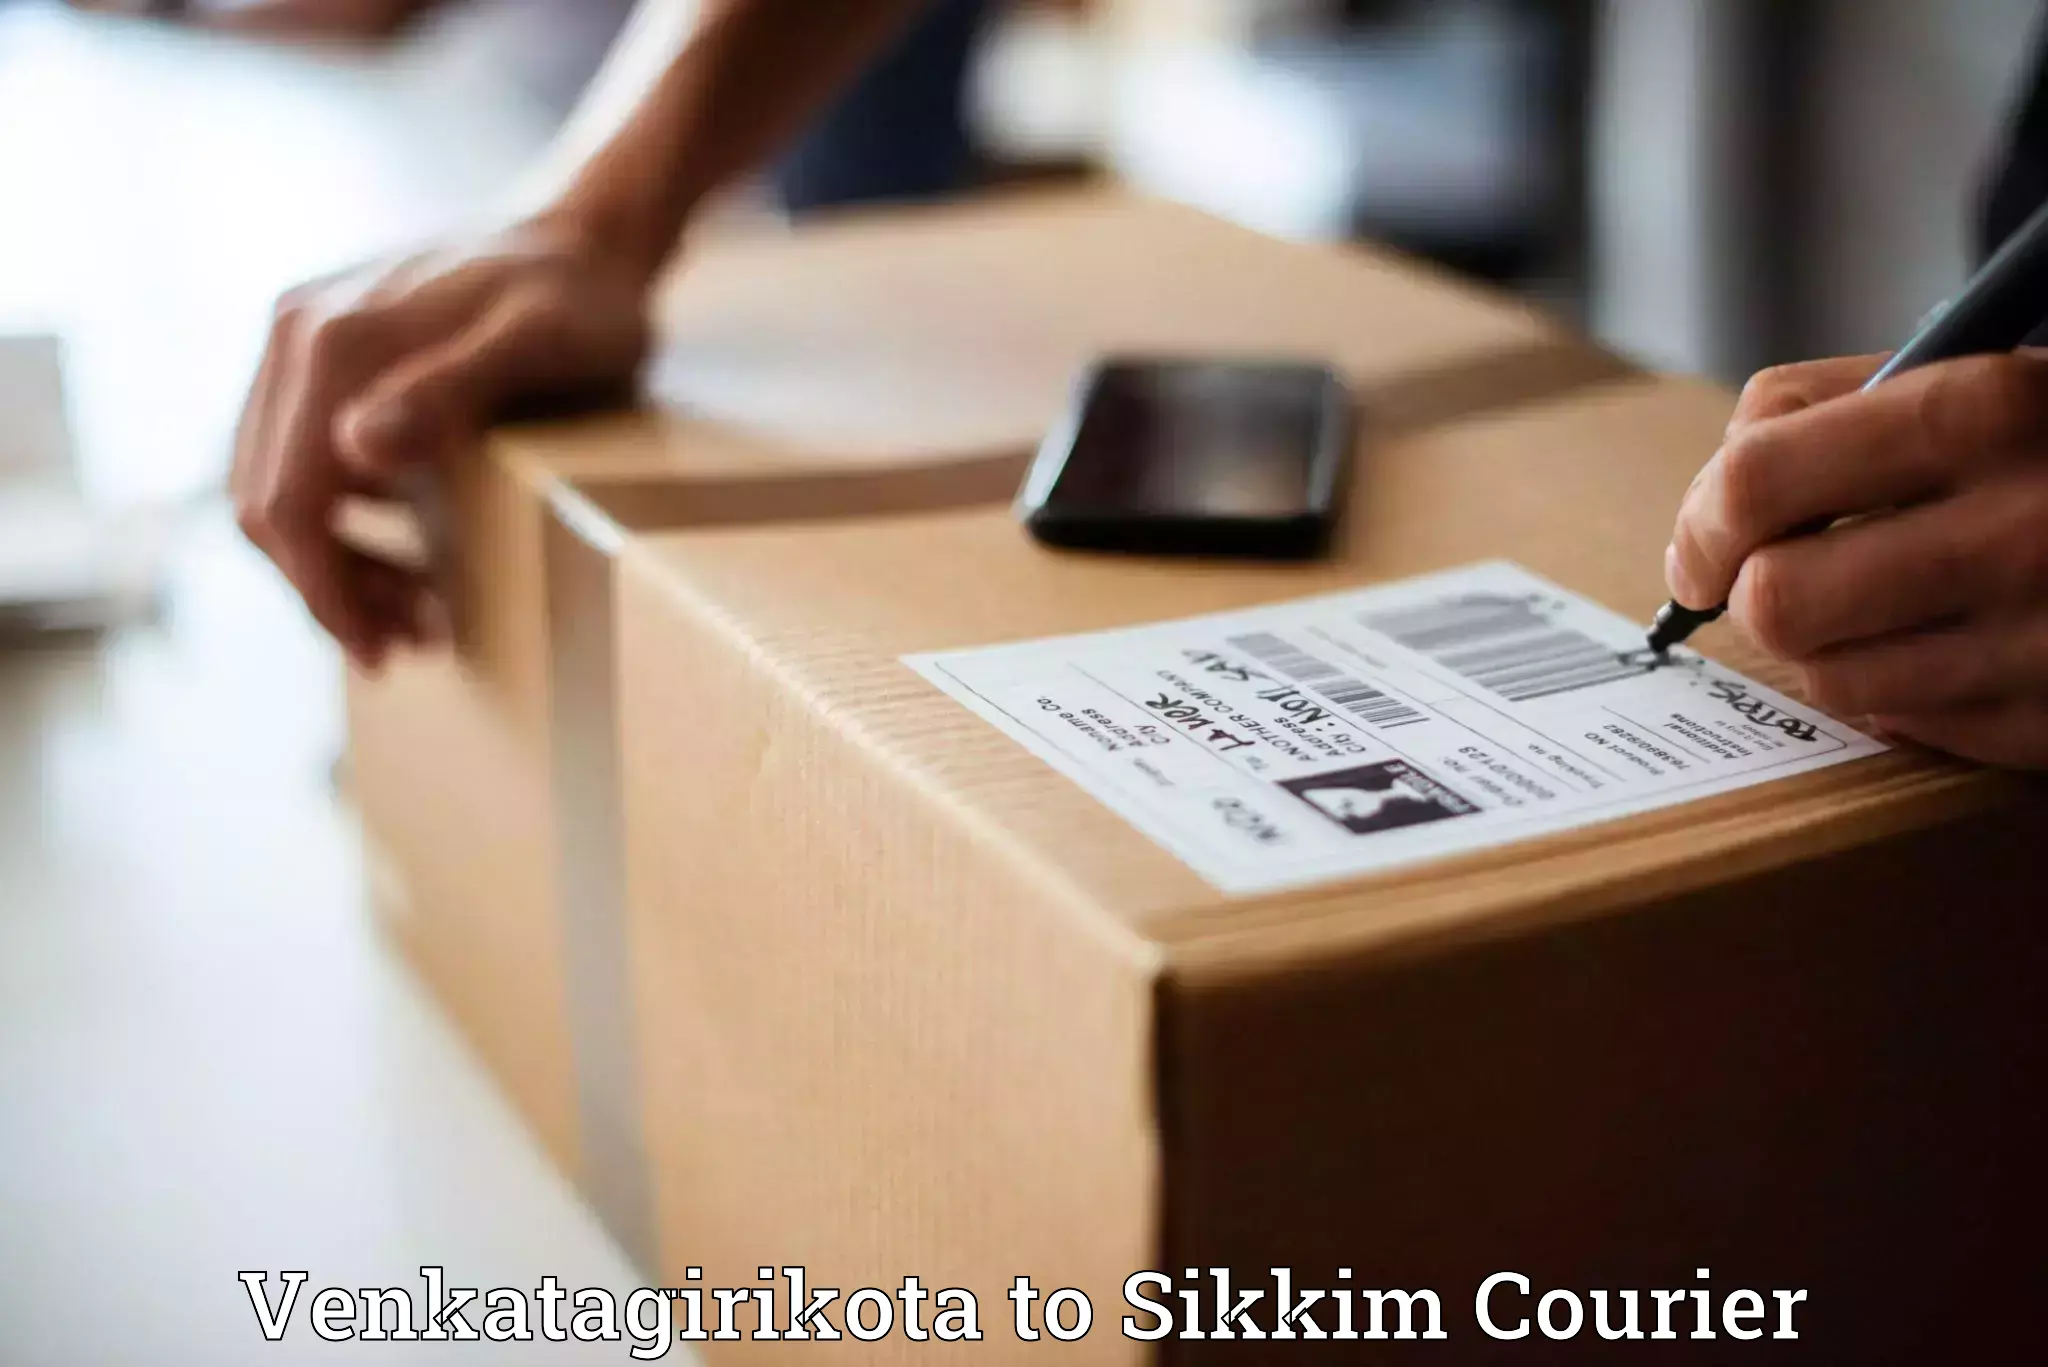 Nationwide shipping capabilities Venkatagirikota to Sikkim